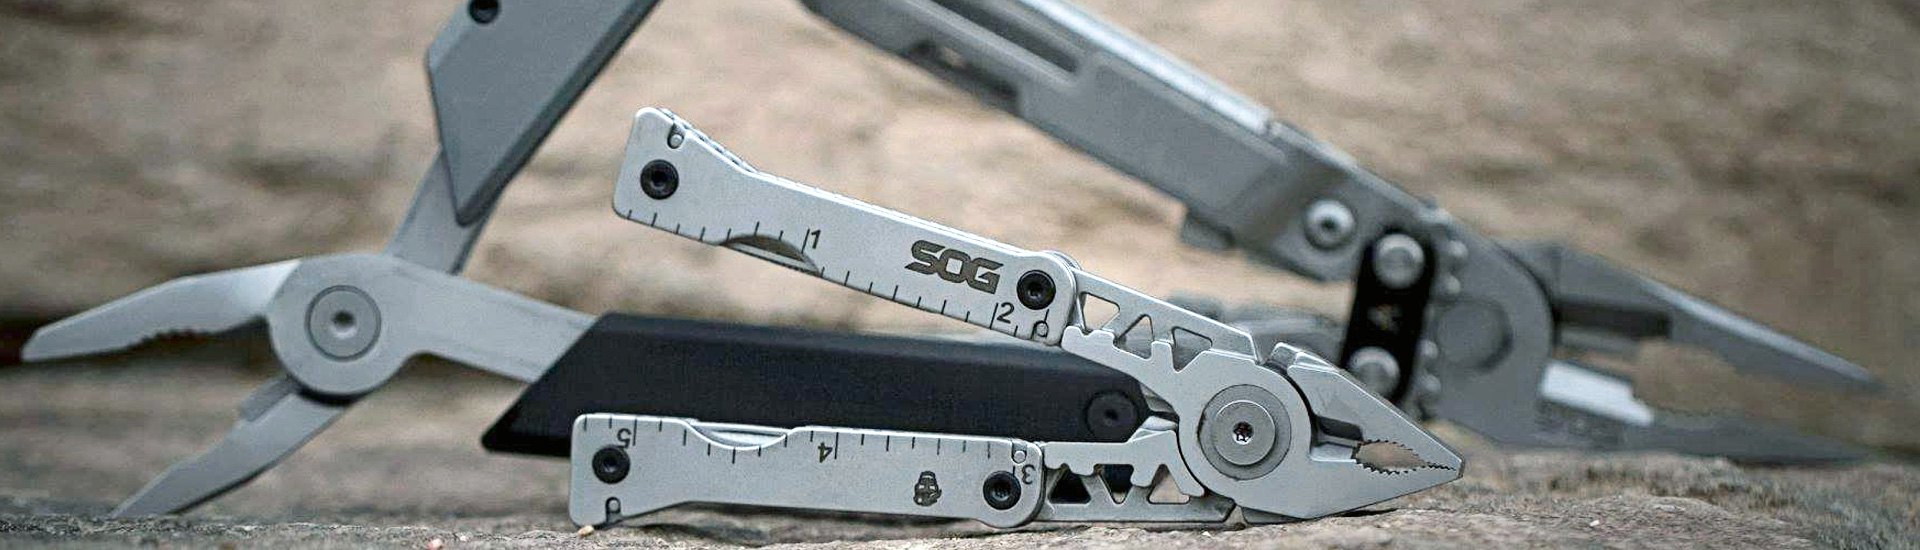 Kershaw Multi Tools